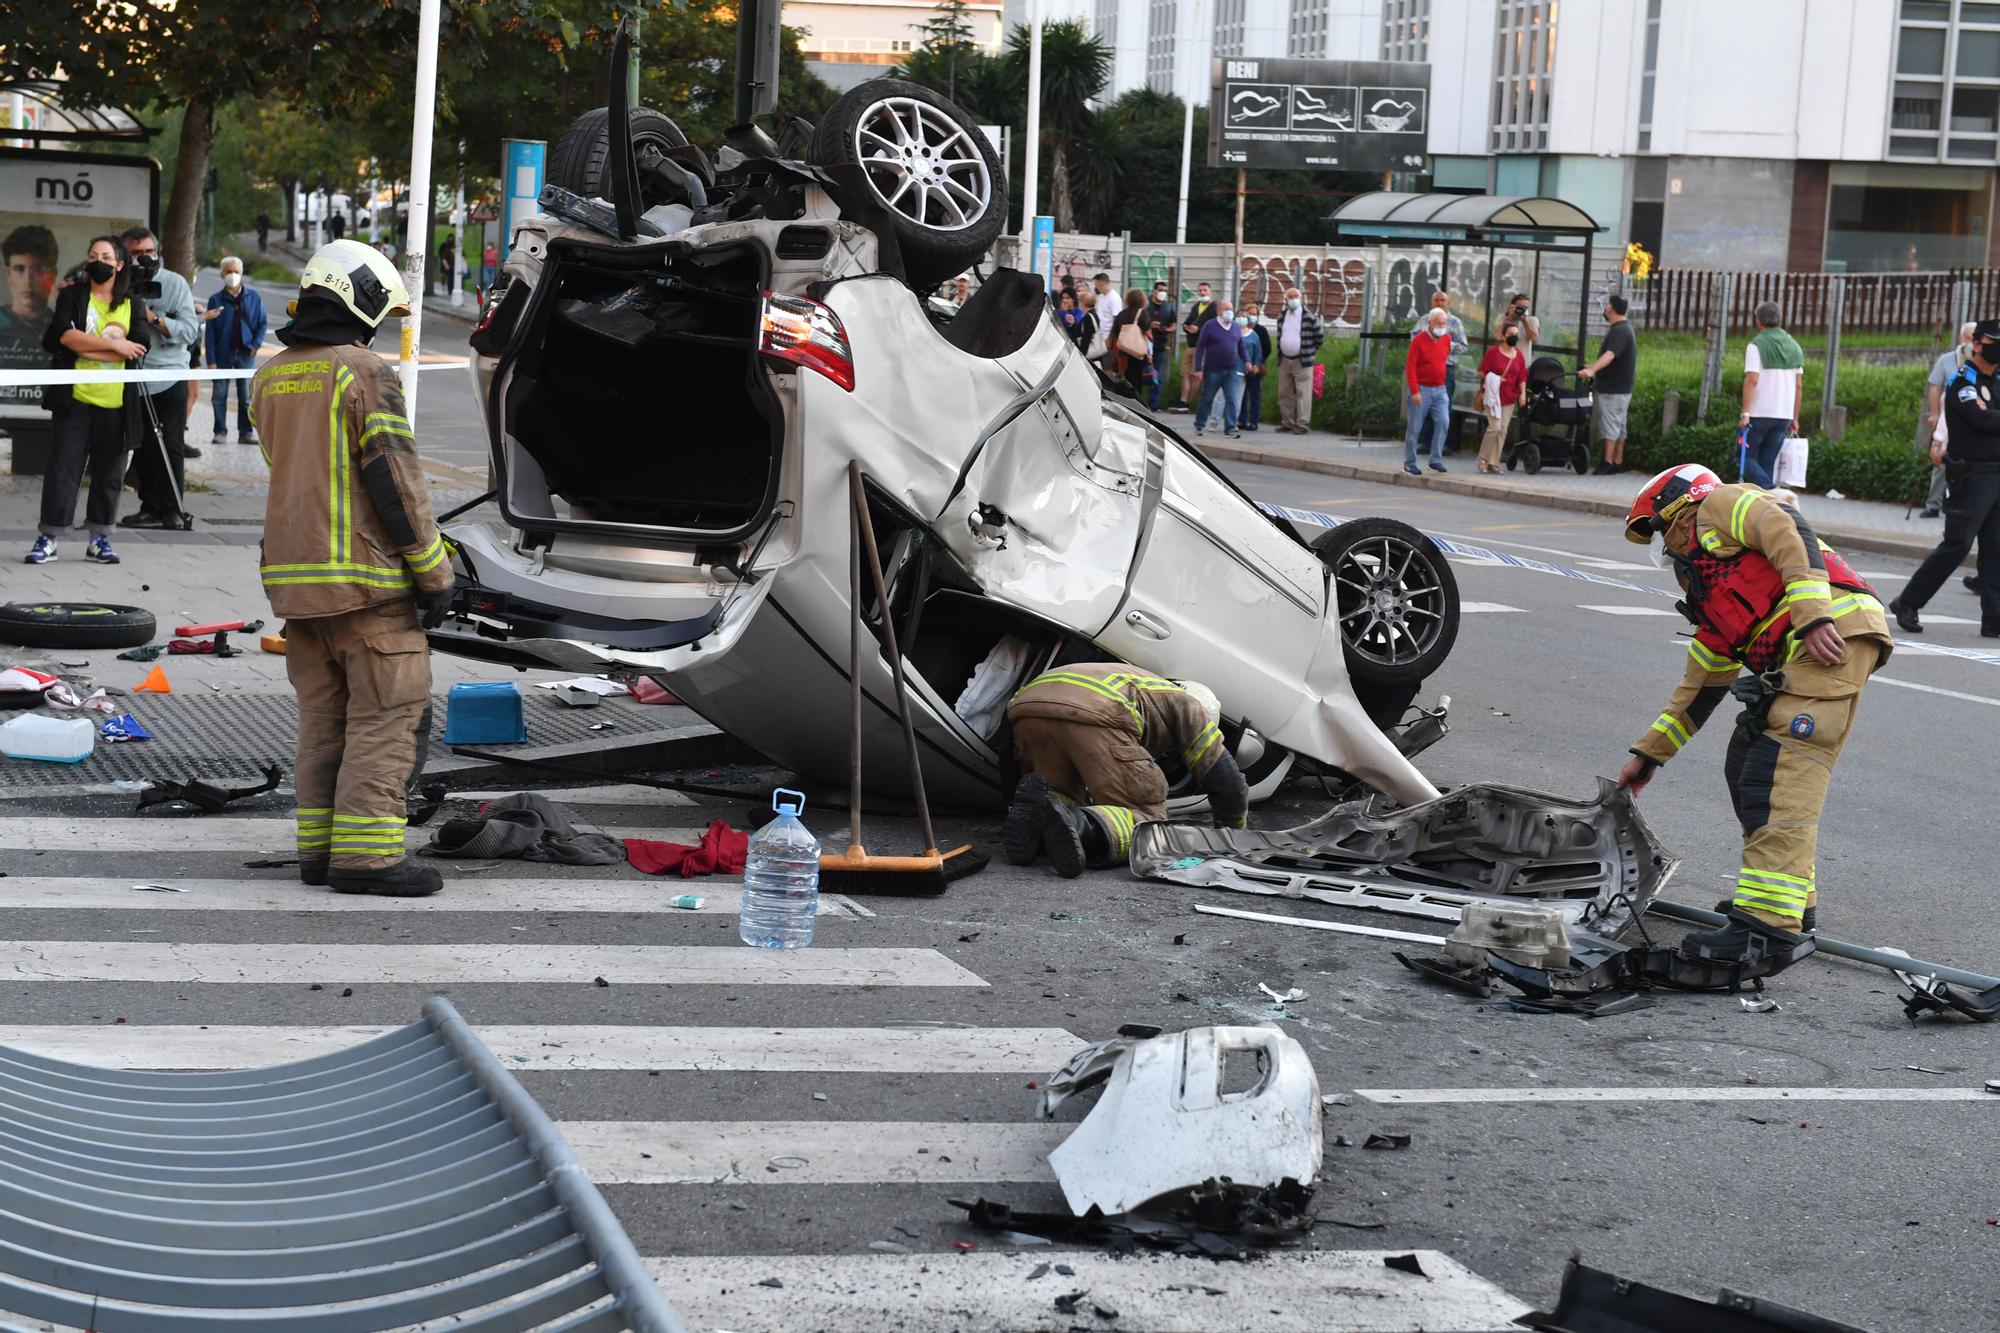 Espectacular accidente en A Coruña con un coche precipitado de un viaducto